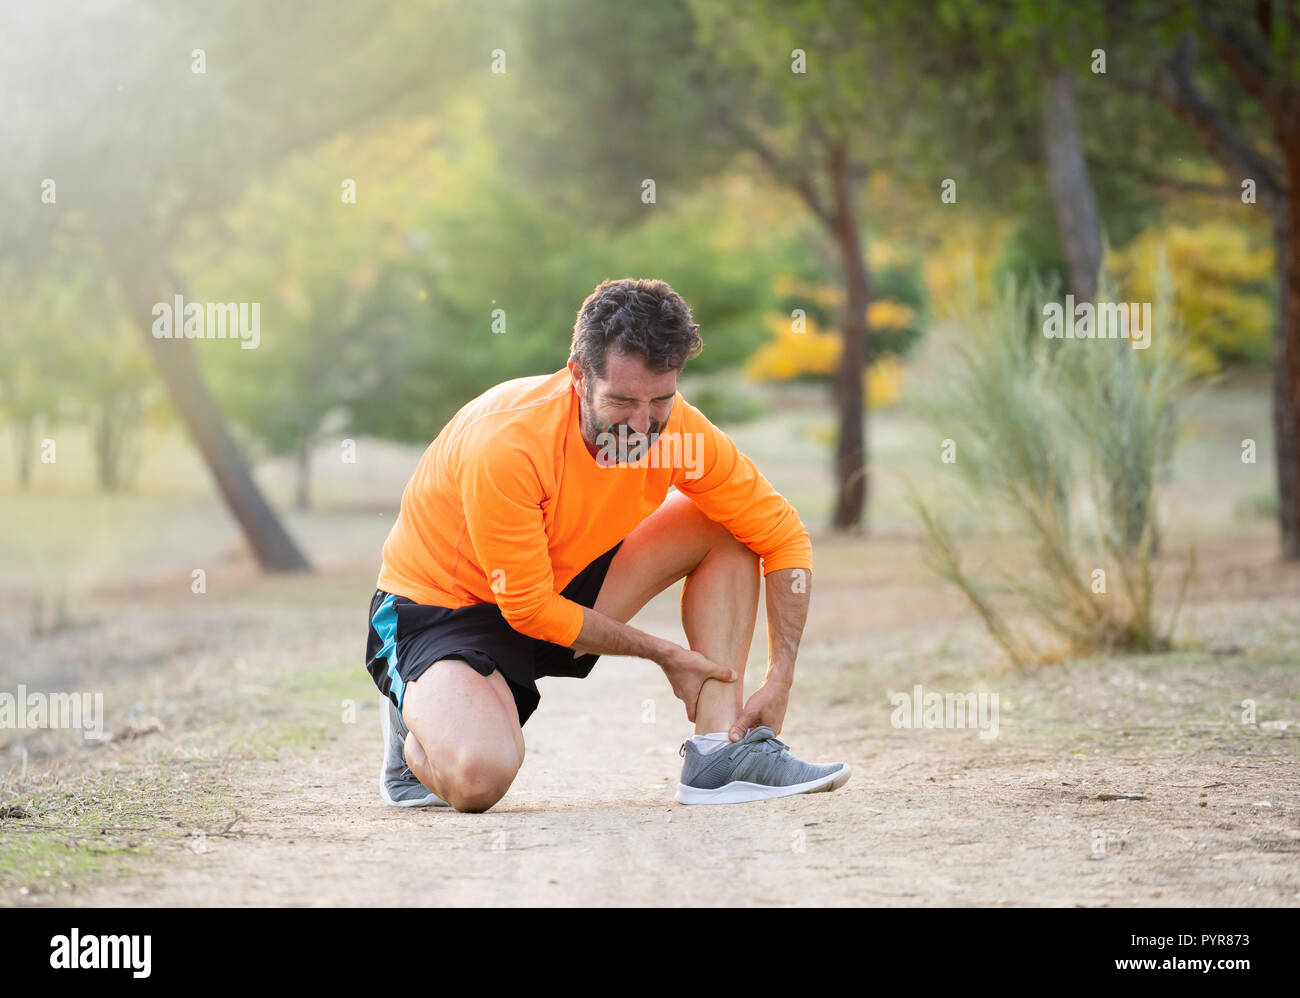 Athletic runner homme hurlant de douleur tenant sa cheville avec pied douloureux maux de jambe de s'exécuter et accident d'entraînement en plein air dans le parc en Physique Banque D'Images